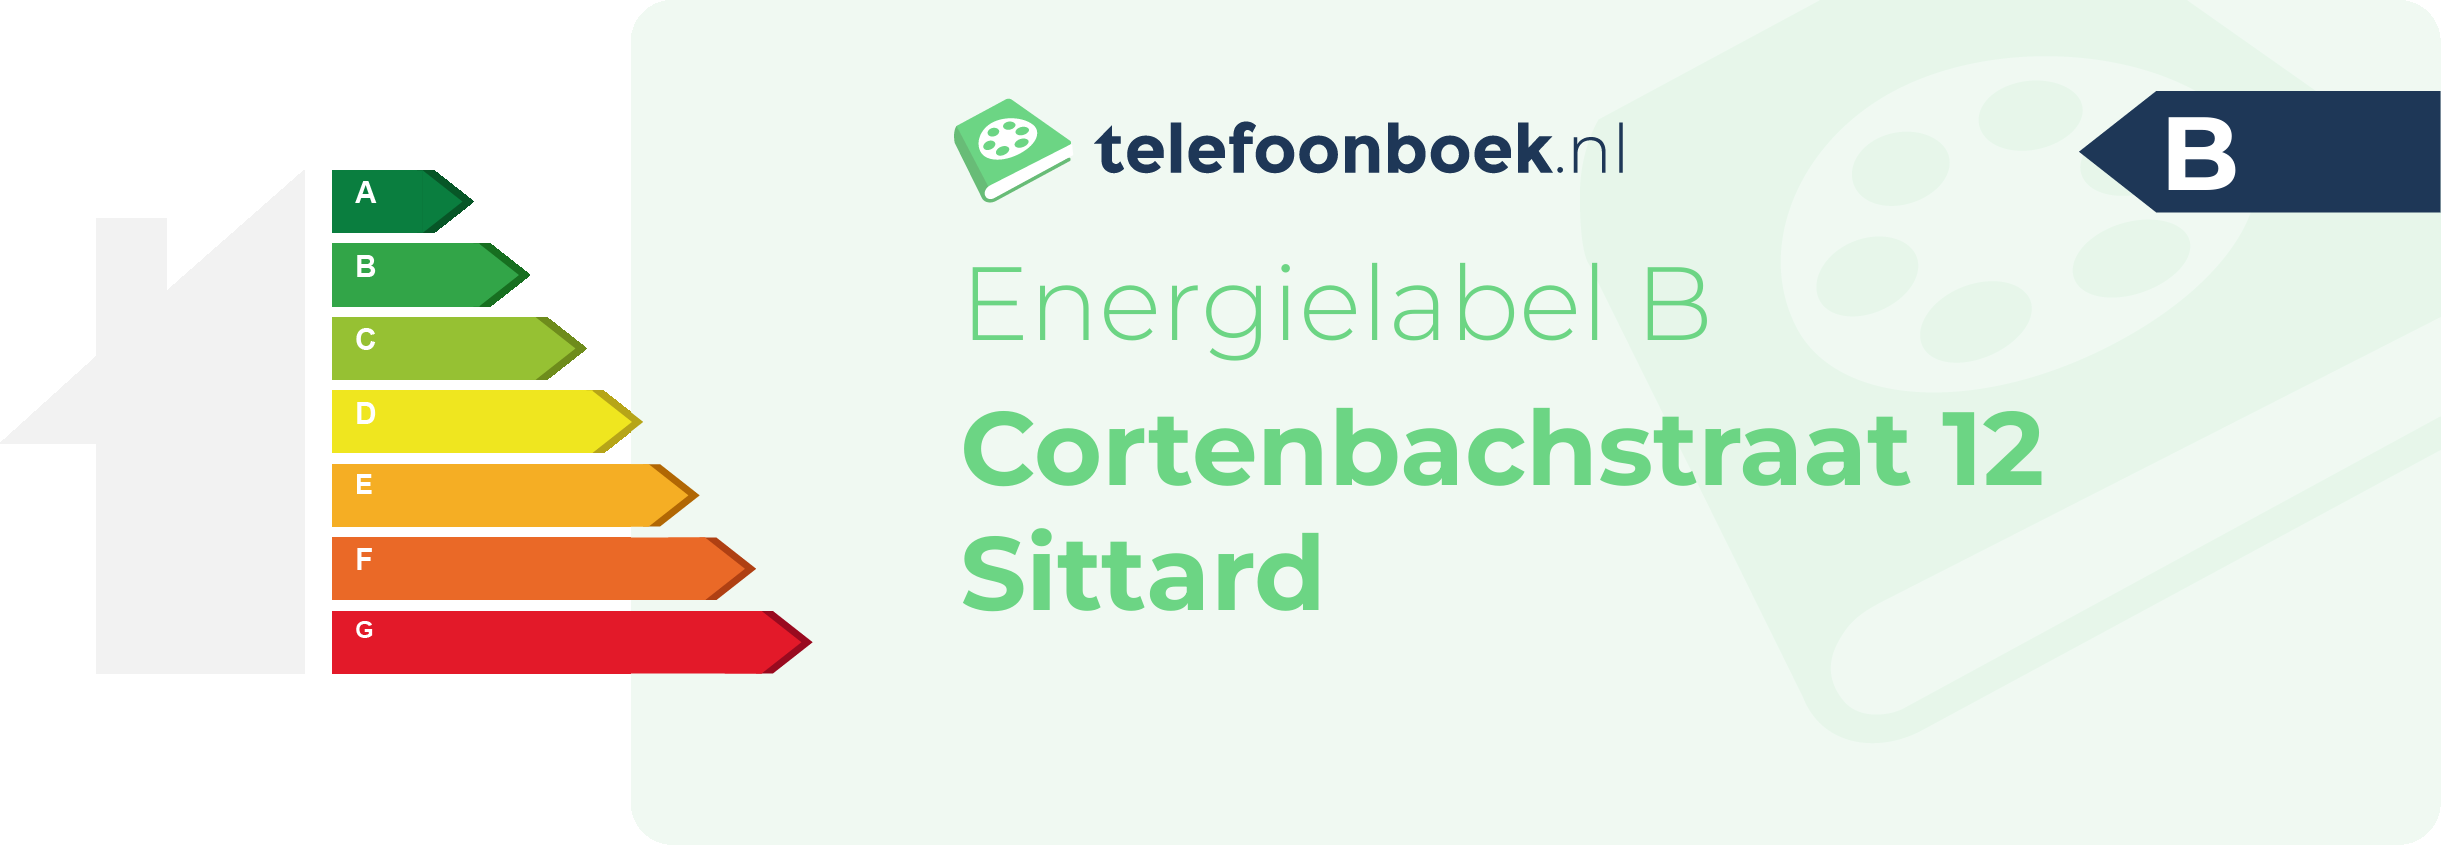 Energielabel Cortenbachstraat 12 Sittard